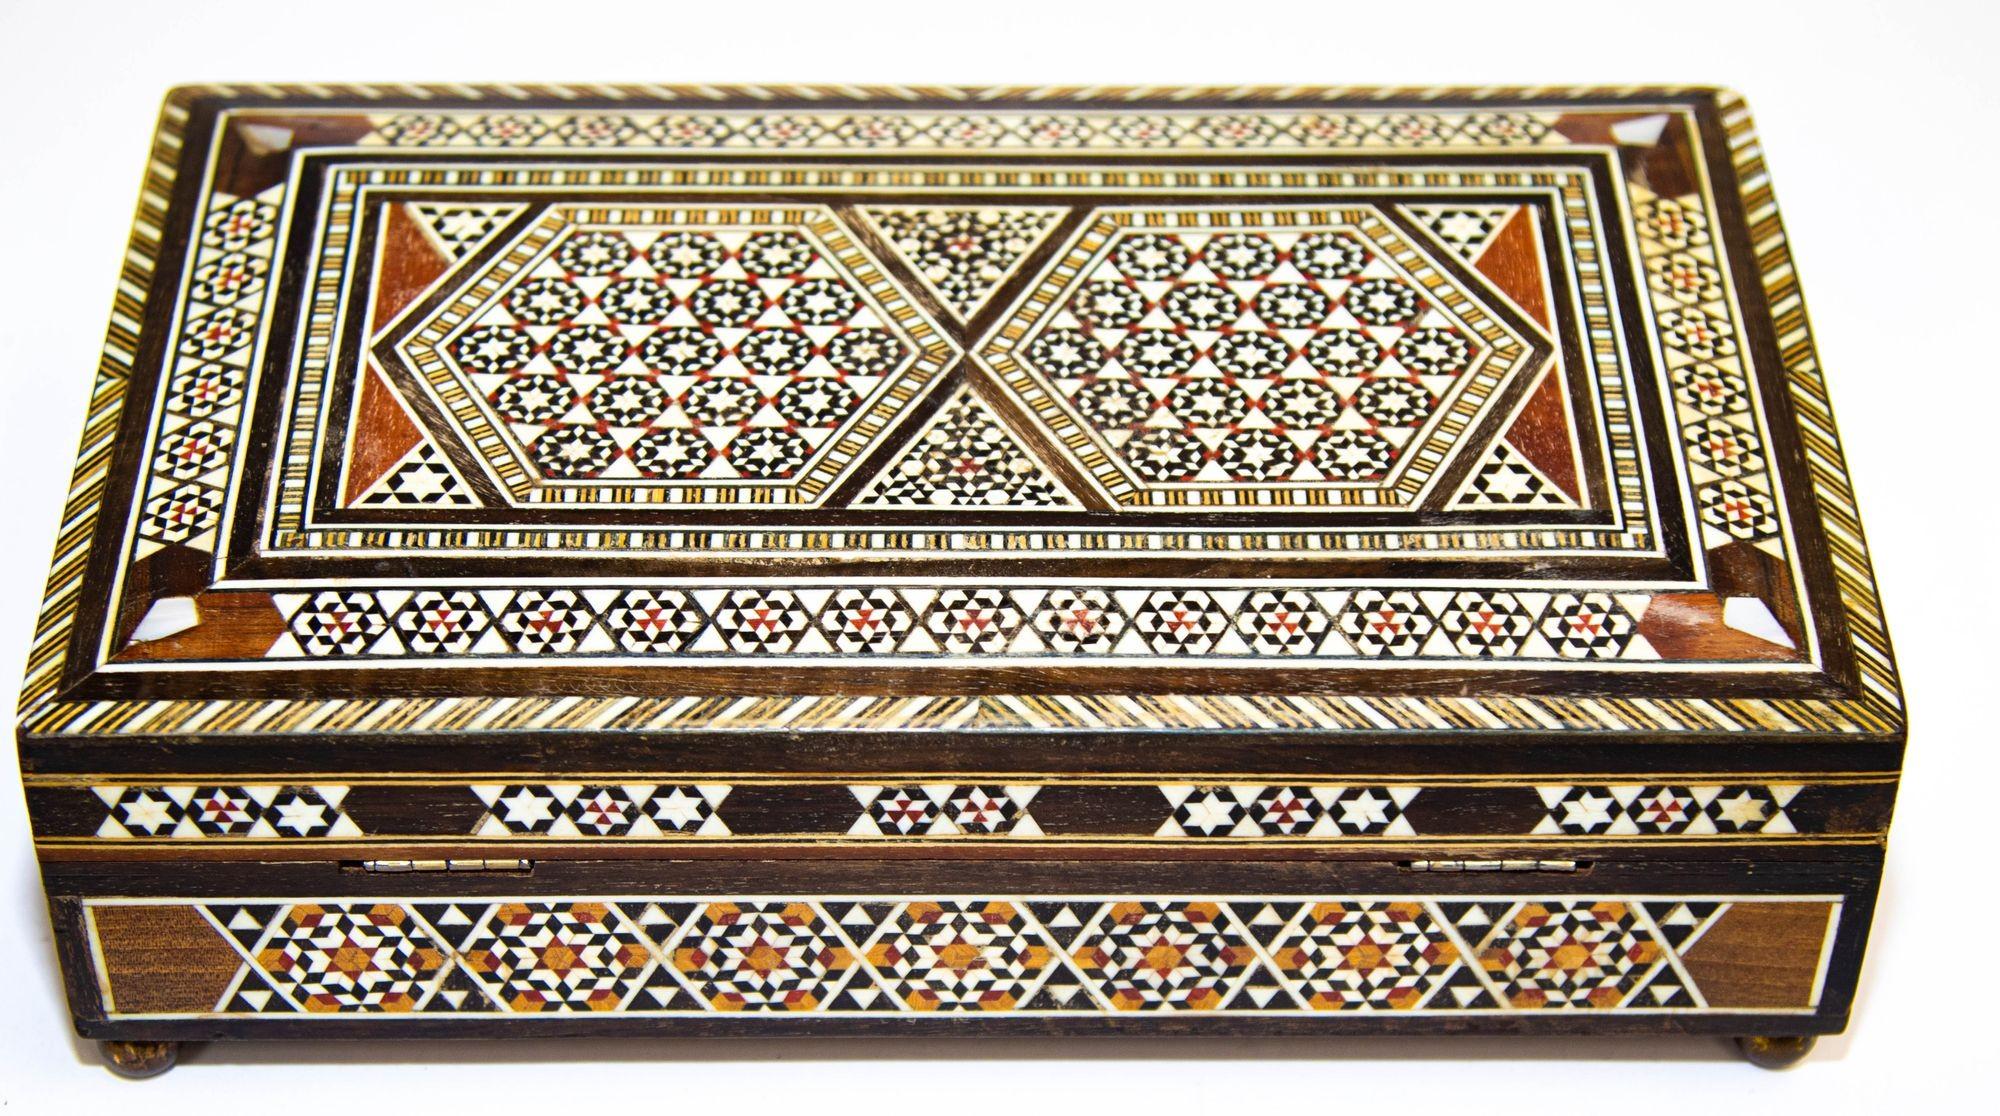 Hand-Crafted Spanish Moorish Inlaid Marquetry Jewelry Music Box